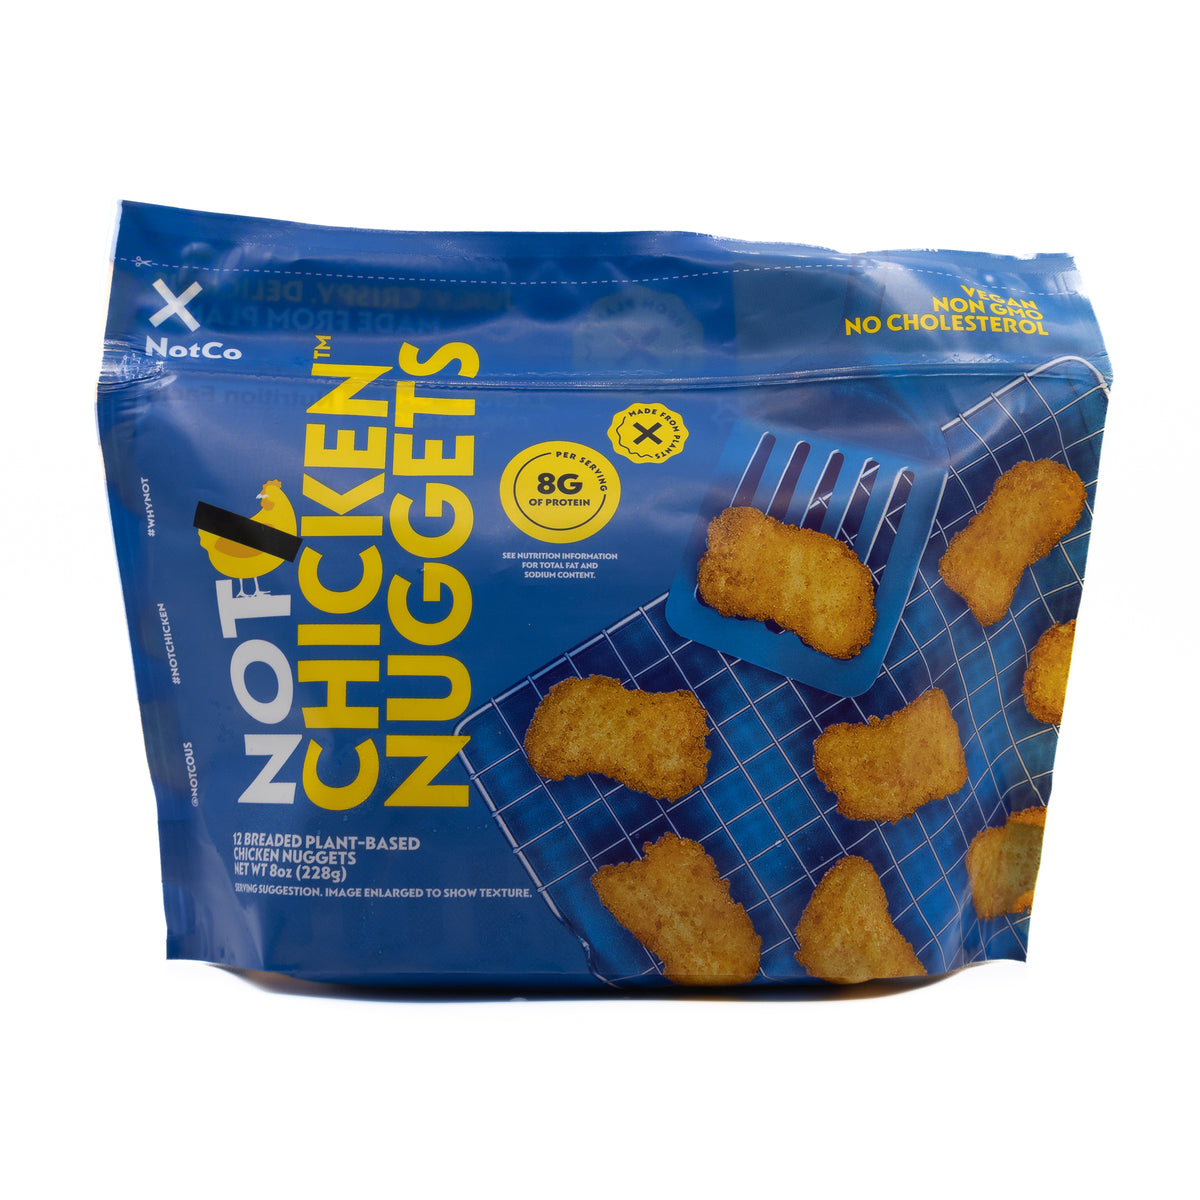 NotCo Chicken Nuggets